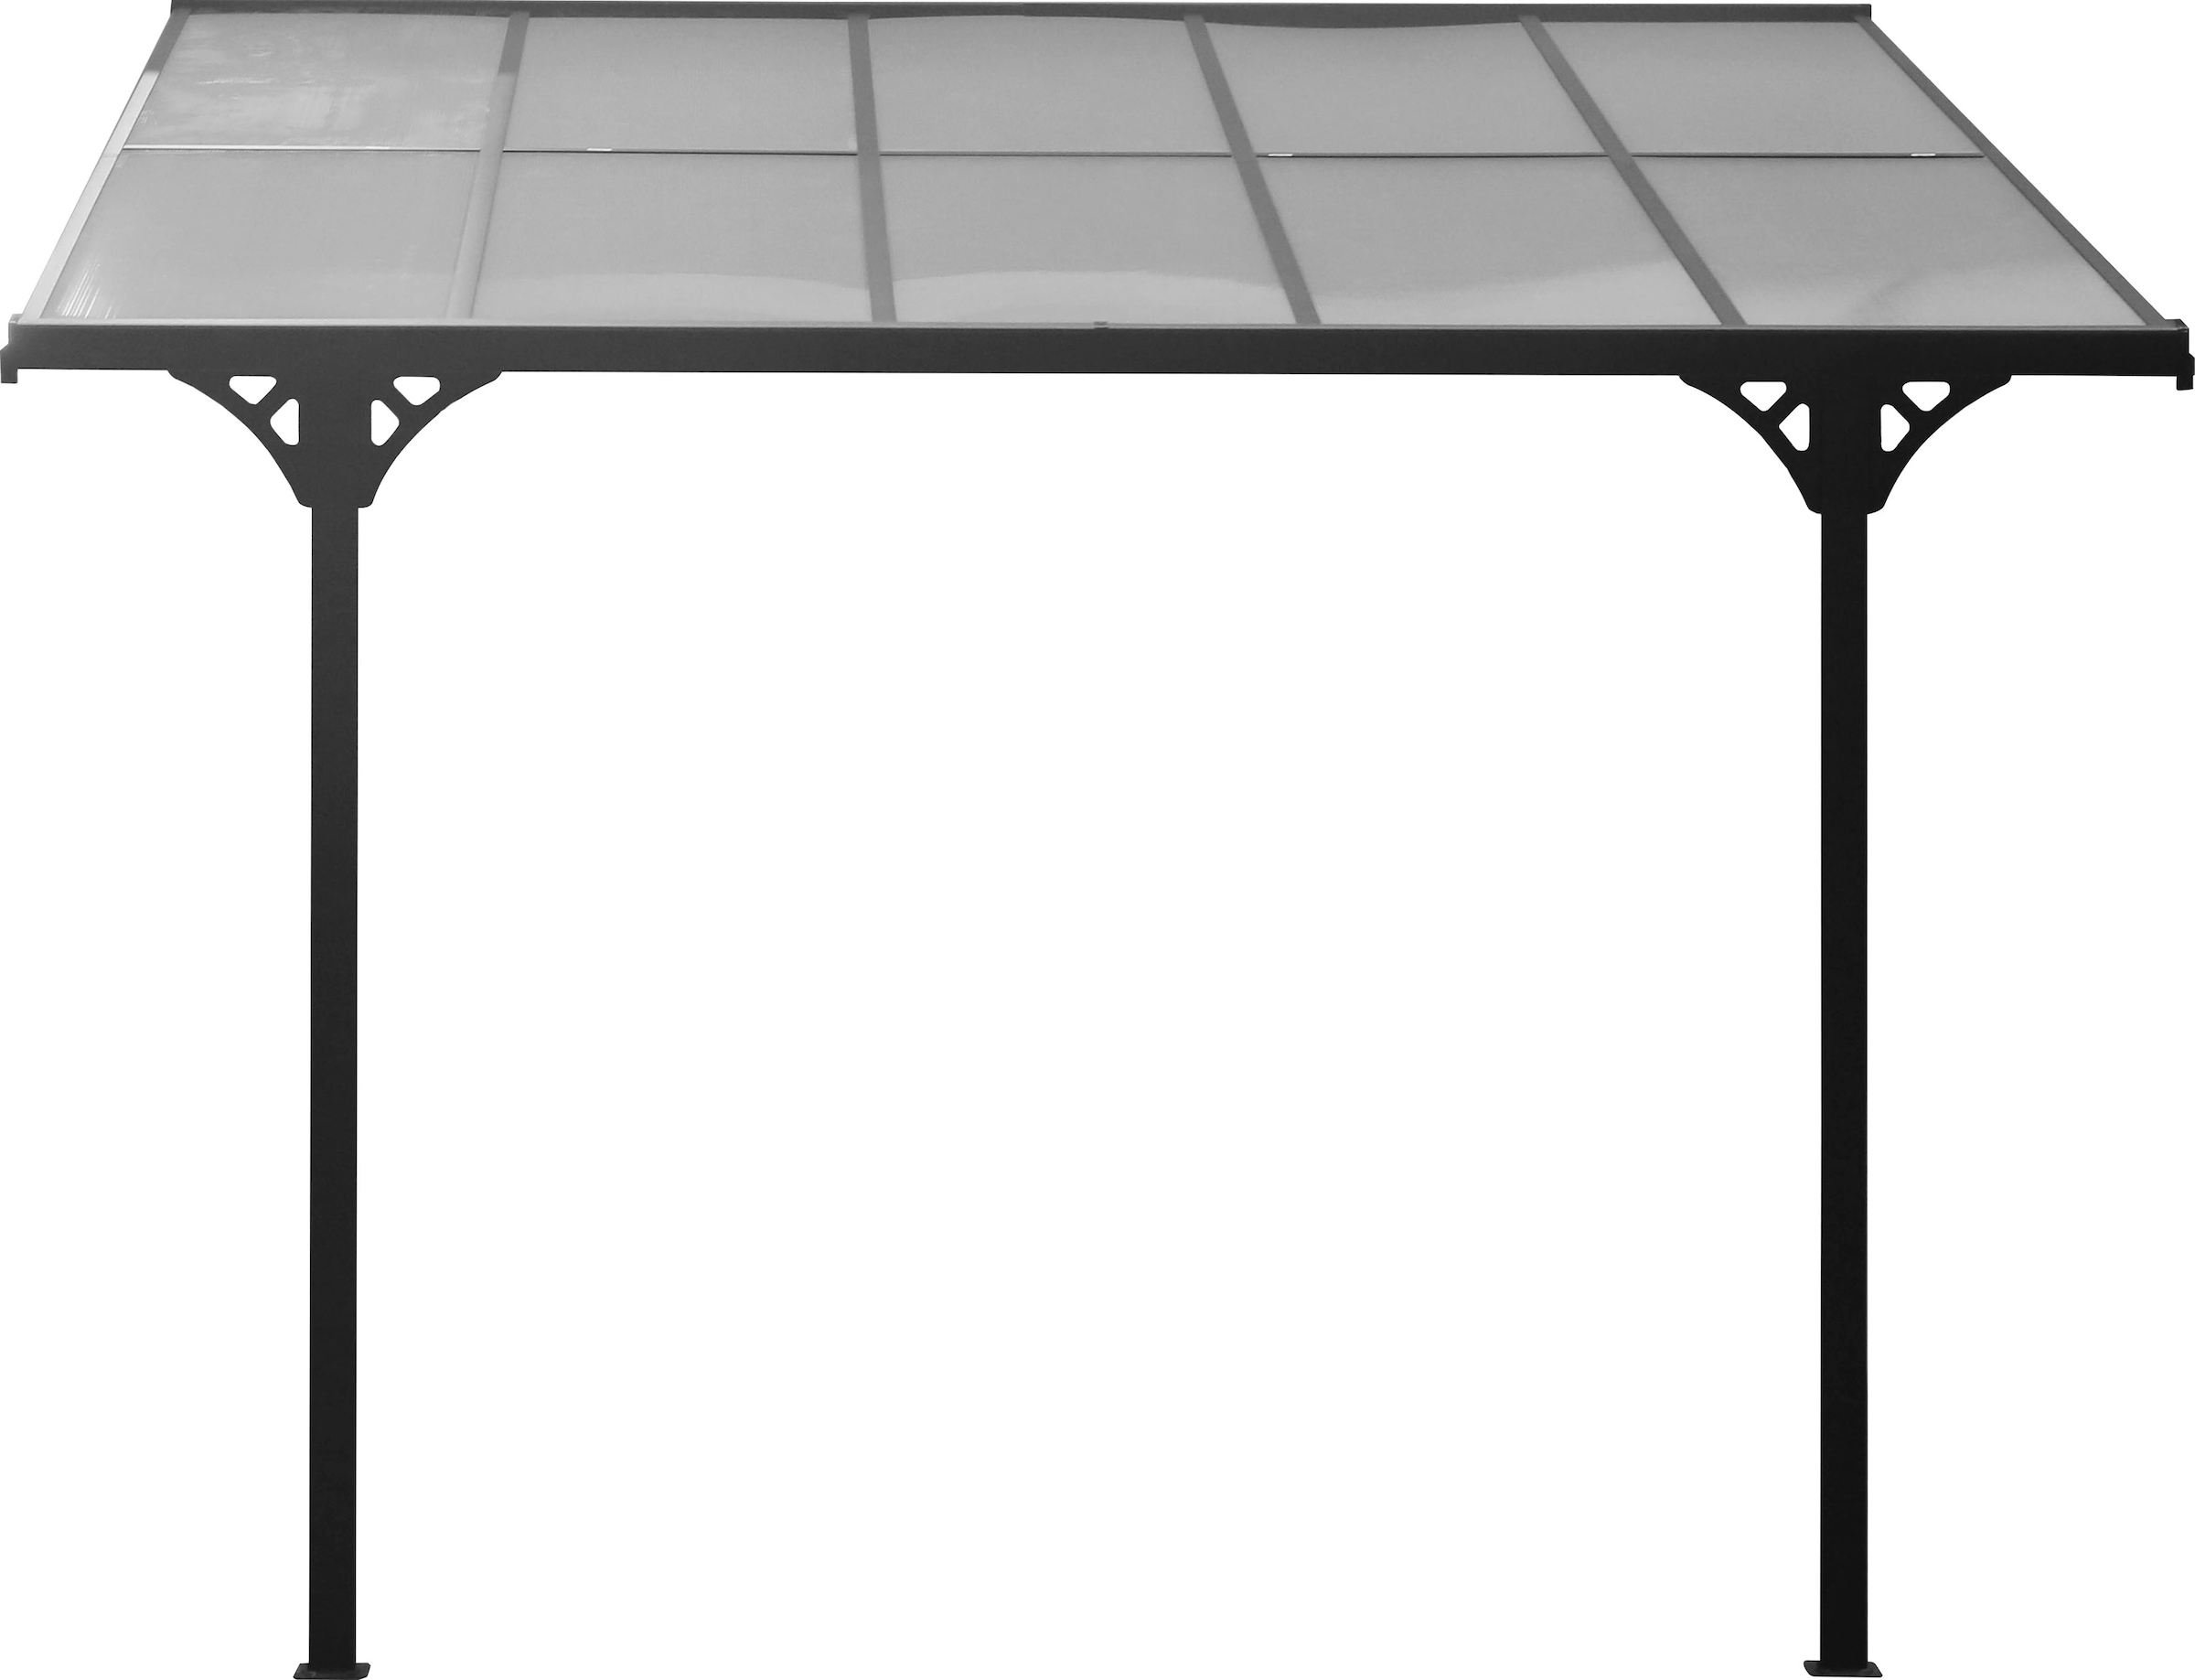 WESTMANN Terrassendach »Bruce«, Rahmen aus pulverbeschichtetem Aluminium, schwarz